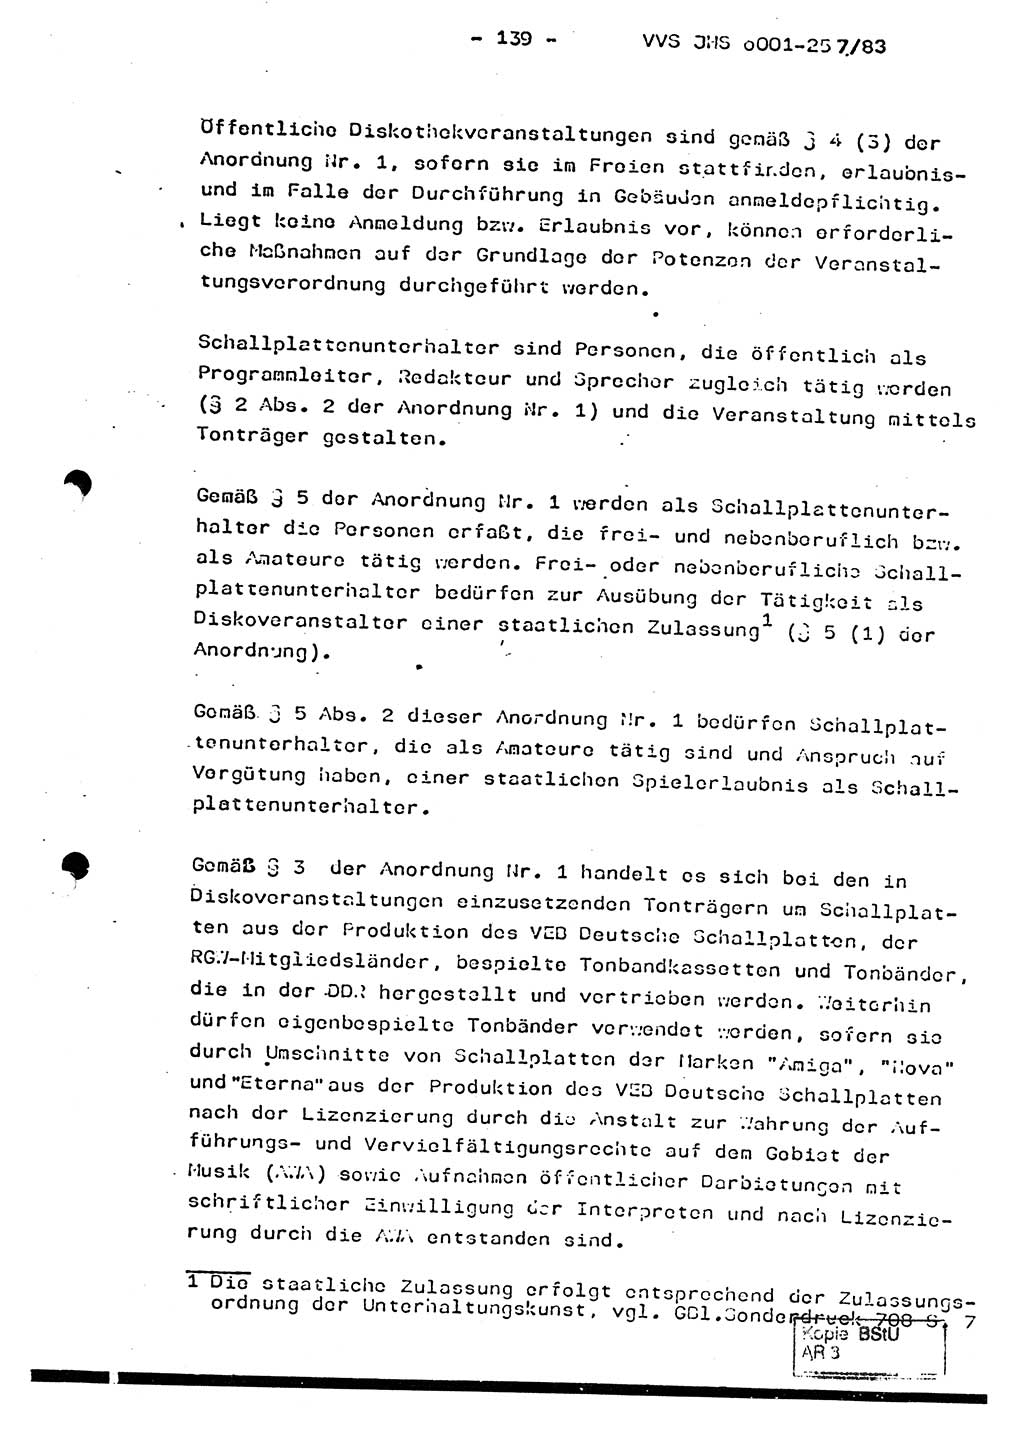 Dissertation, Oberst Helmut Lubas (BV Mdg.), Oberstleutnant Manfred Eschberger (HA IX), Oberleutnant Hans-Jürgen Ludwig (JHS), Ministerium für Staatssicherheit (MfS) [Deutsche Demokratische Republik (DDR)], Juristische Hochschule (JHS), Vertrauliche Verschlußsache (VVS) o001-257/83, Potsdam 1983, Seite 139 (Diss. MfS DDR JHS VVS o001-257/83 1983, S. 139)